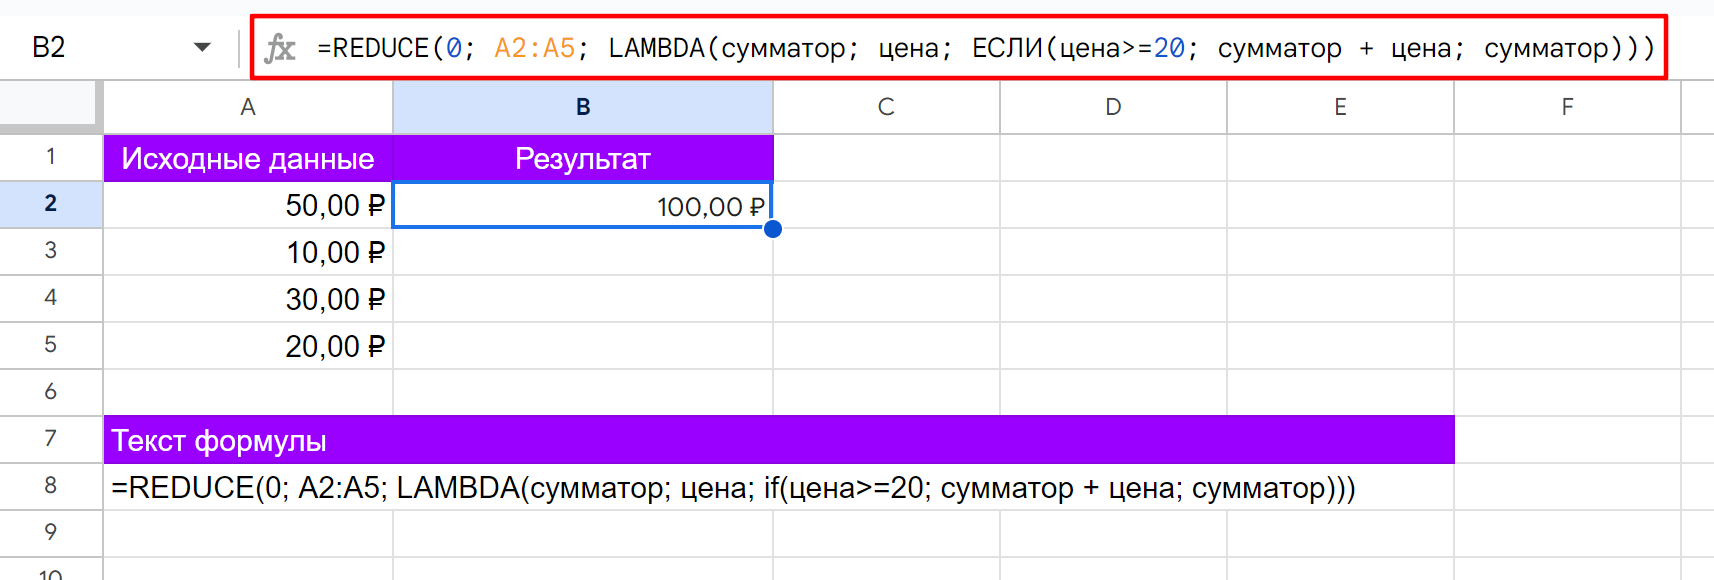 Иллюстрация использования функции REDUCE в Google Таблицах. Прибавляем цены больше или равные 20 рублям